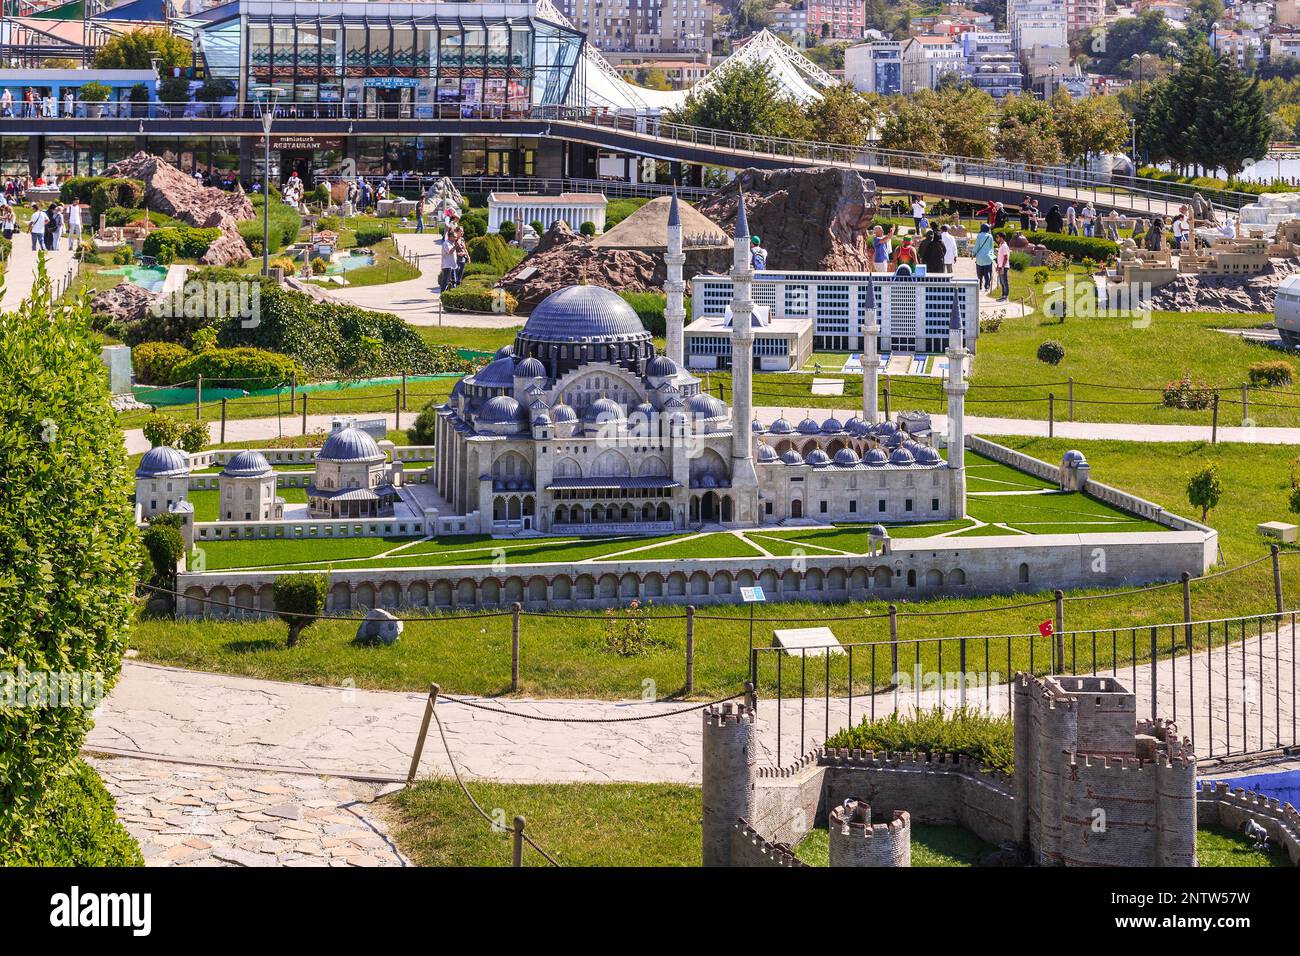 ISTANBUL, TURQUIE - 14 SEPTEMBRE 2017 : c'est la disposition de la mosquée Suleymaniye dans le parc Miniaturk, qui présente des modèles d'archi exceptionnels Banque D'Images